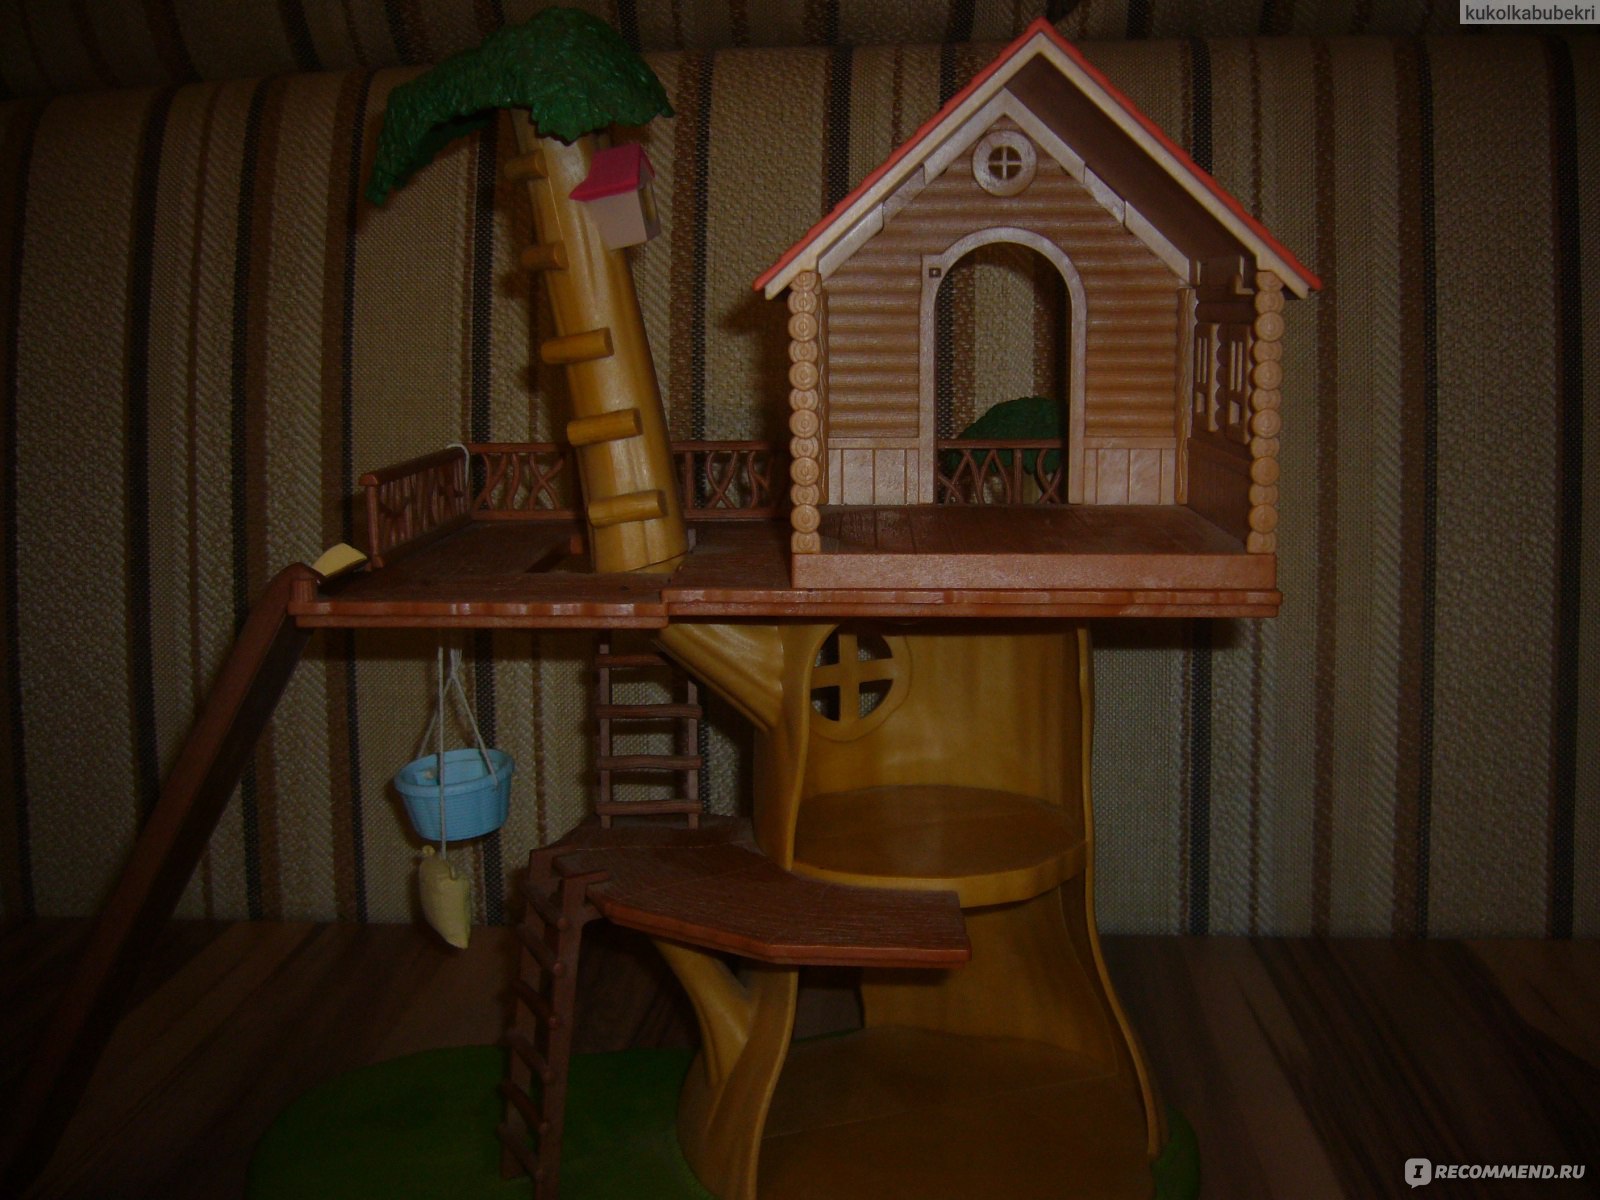 Sylvanian Families Дерево-дом (Tree House) арт.2882 - «Так вот ты какой,  домик на дереве!!! Хотела бы я на минутку стать ребенком, чтобы  наслаждаться игрой! Впрочем, я и в своем возрасте наслаждаюсь этим